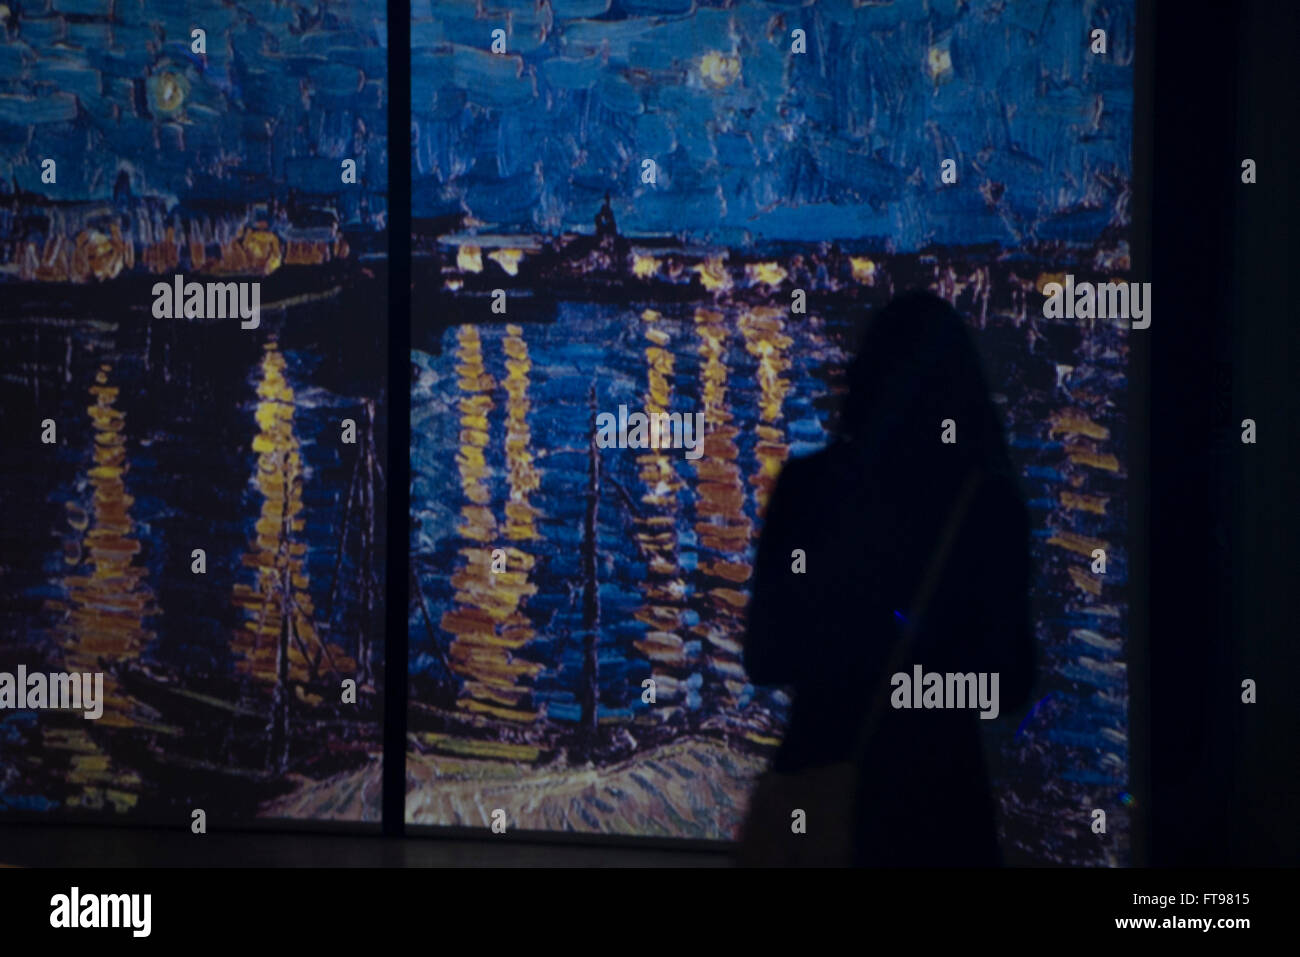 Turin, Italie. 25 mars, 2016. Une exposition d'art multimédia intitulée "Van Gogh en vie" présentant le travail du peintre Vincent Van Gogh, le 25 mars 2016 à Turin, Italie Crédit : Stefano Guidi/Alamy Live News Banque D'Images